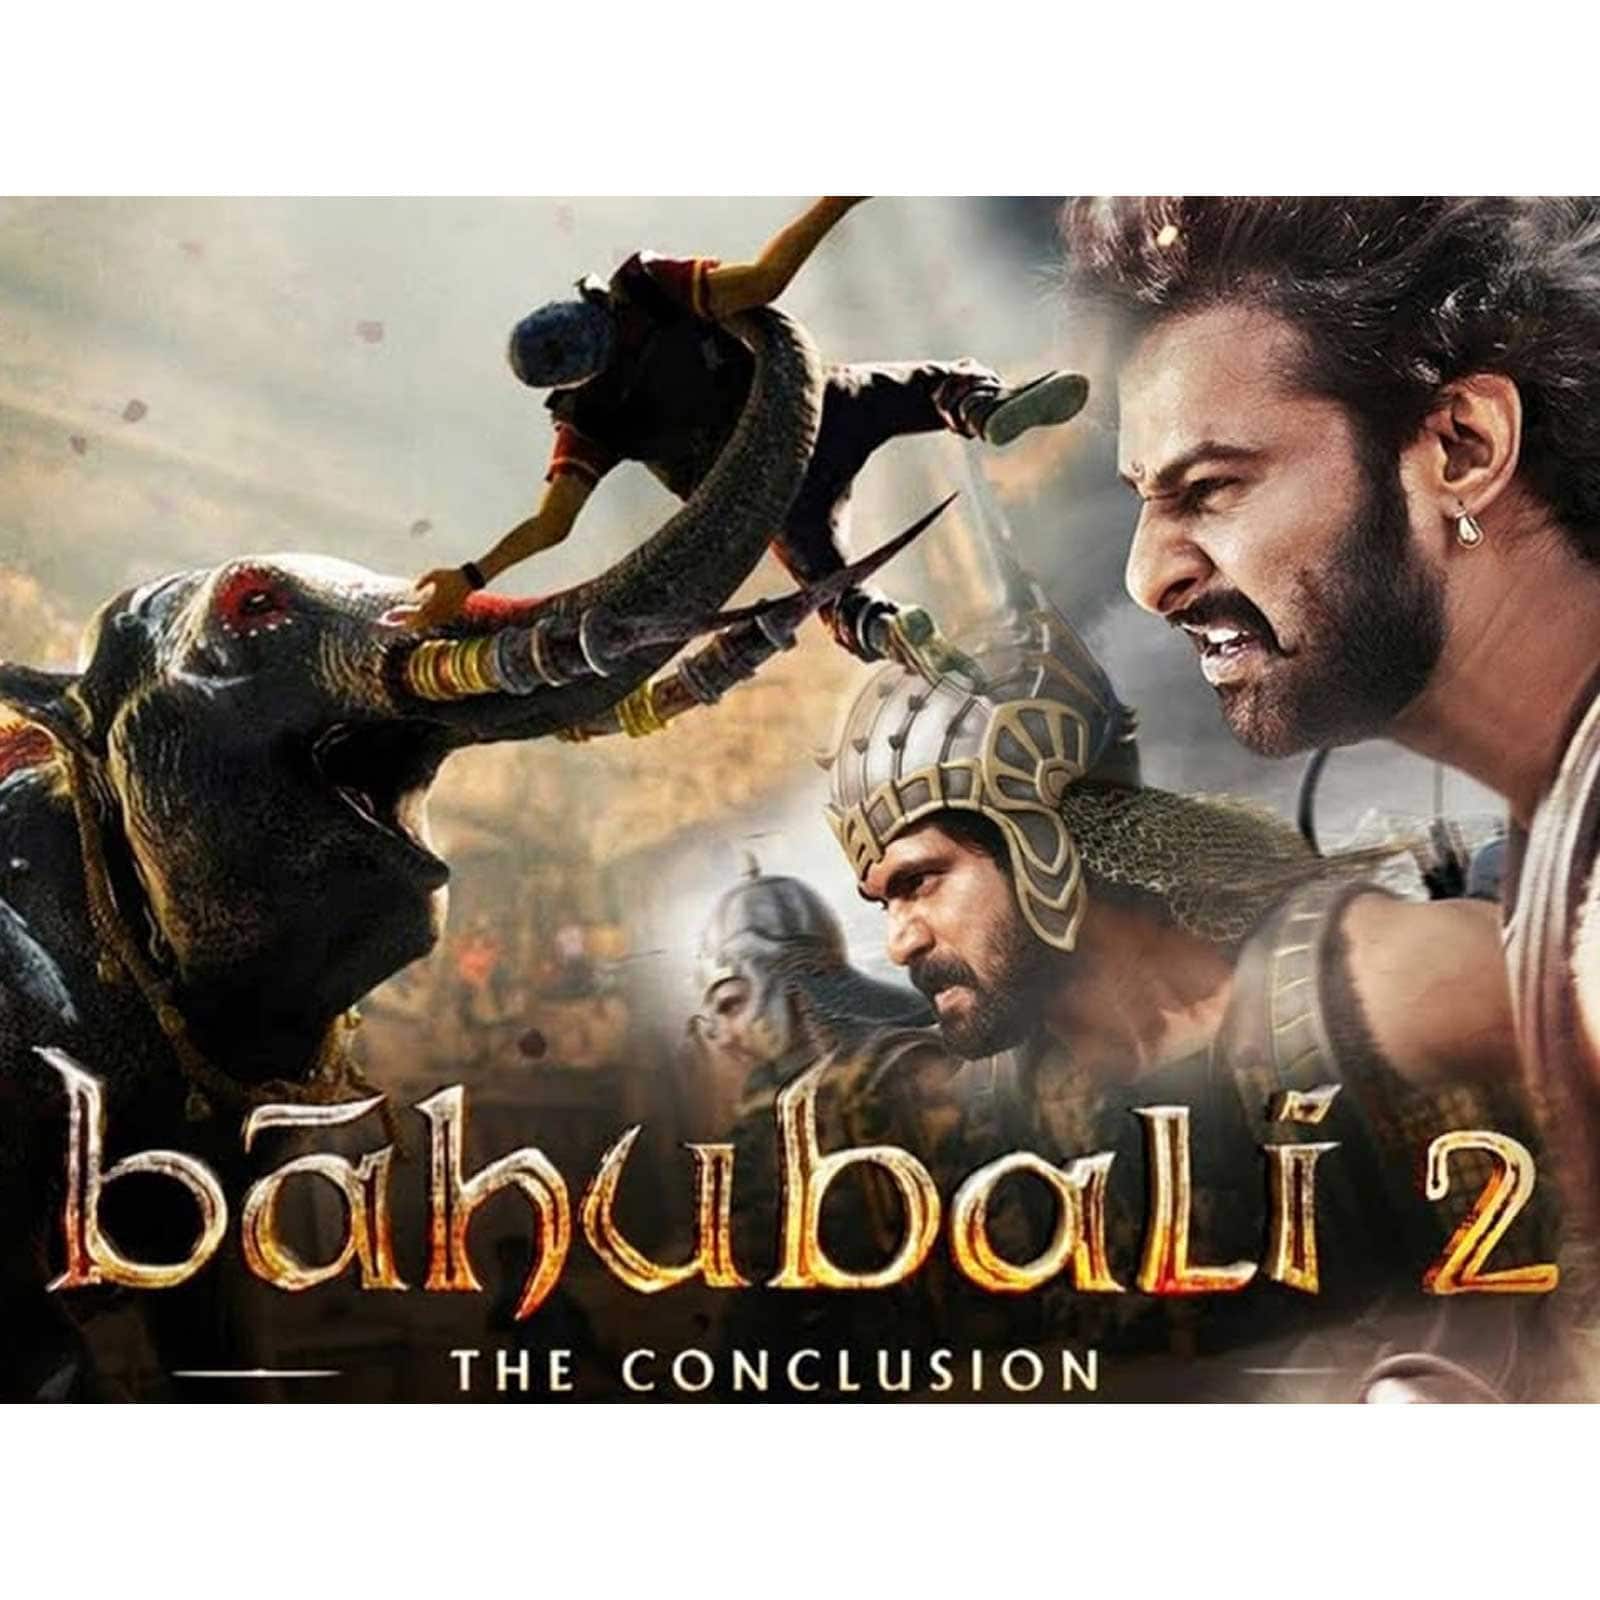 baahubali 2 hindi in theaters